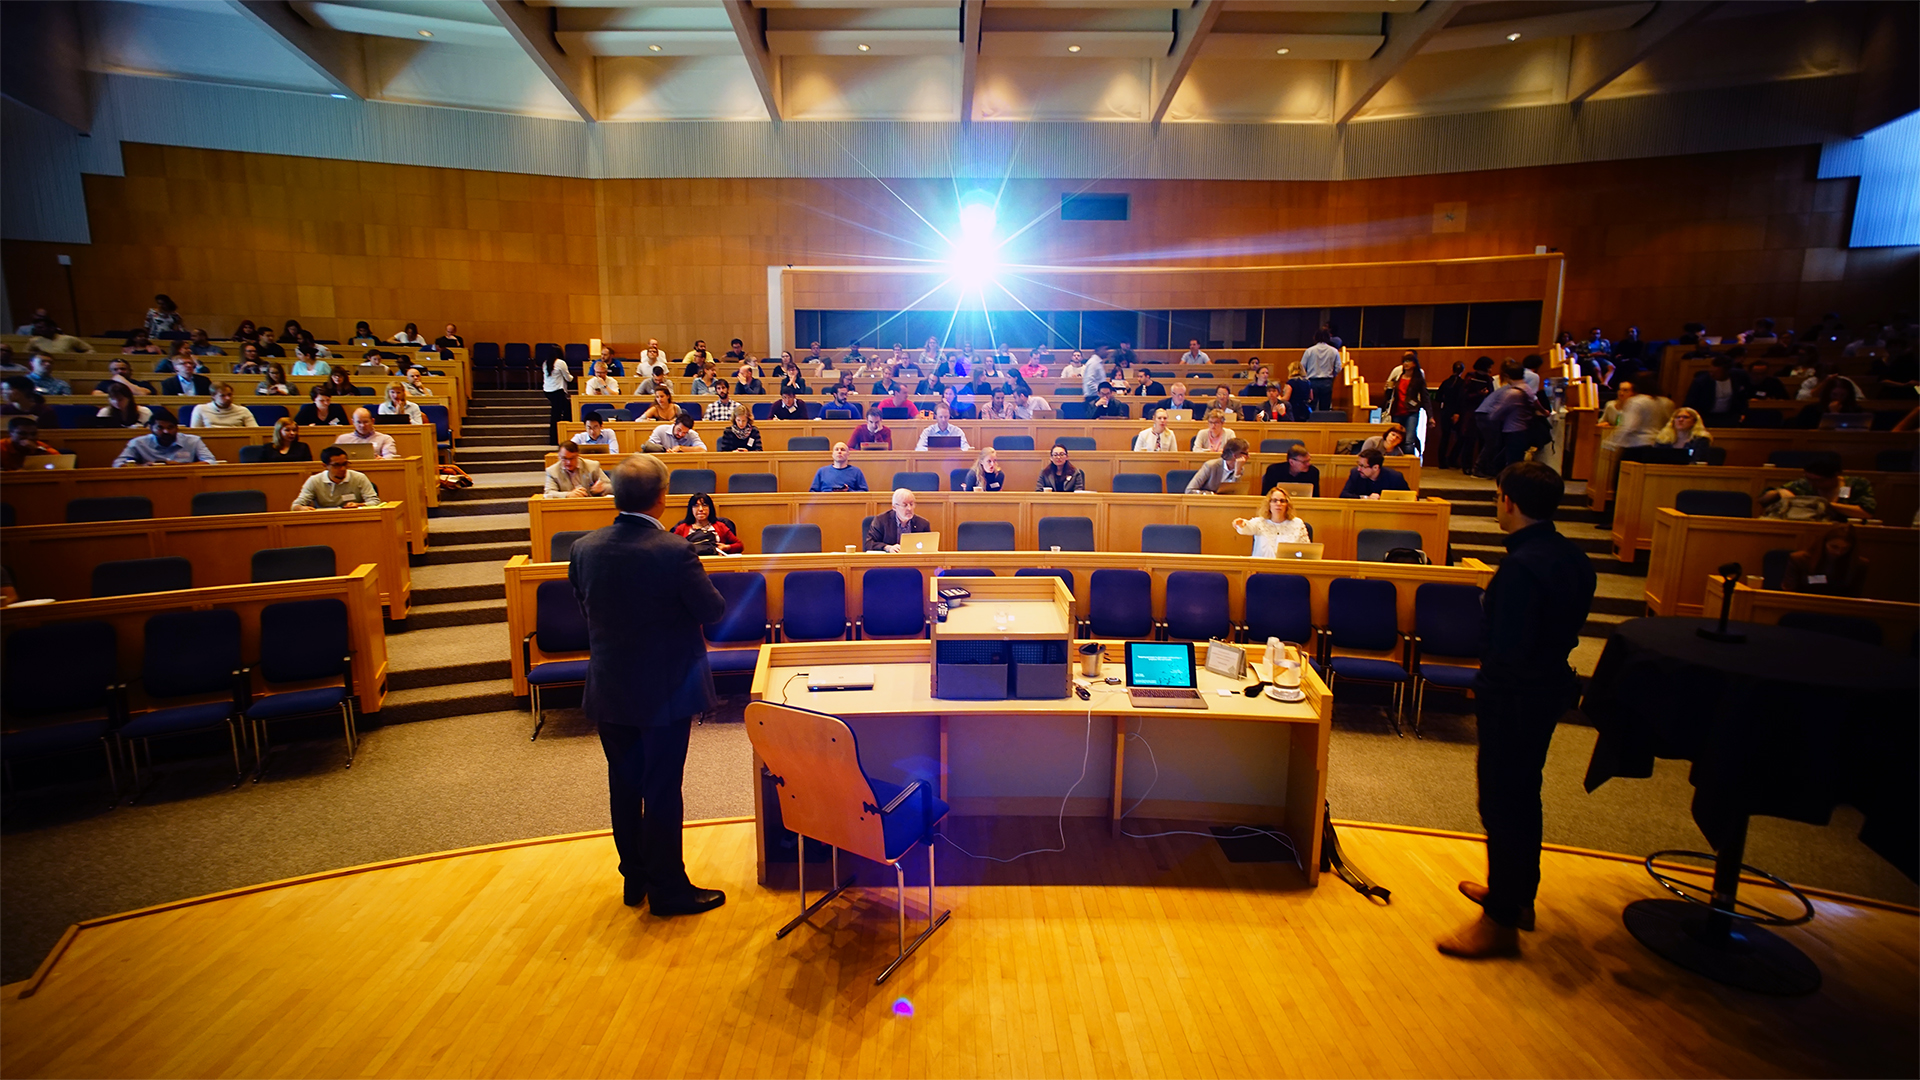 Photo of main auditorium